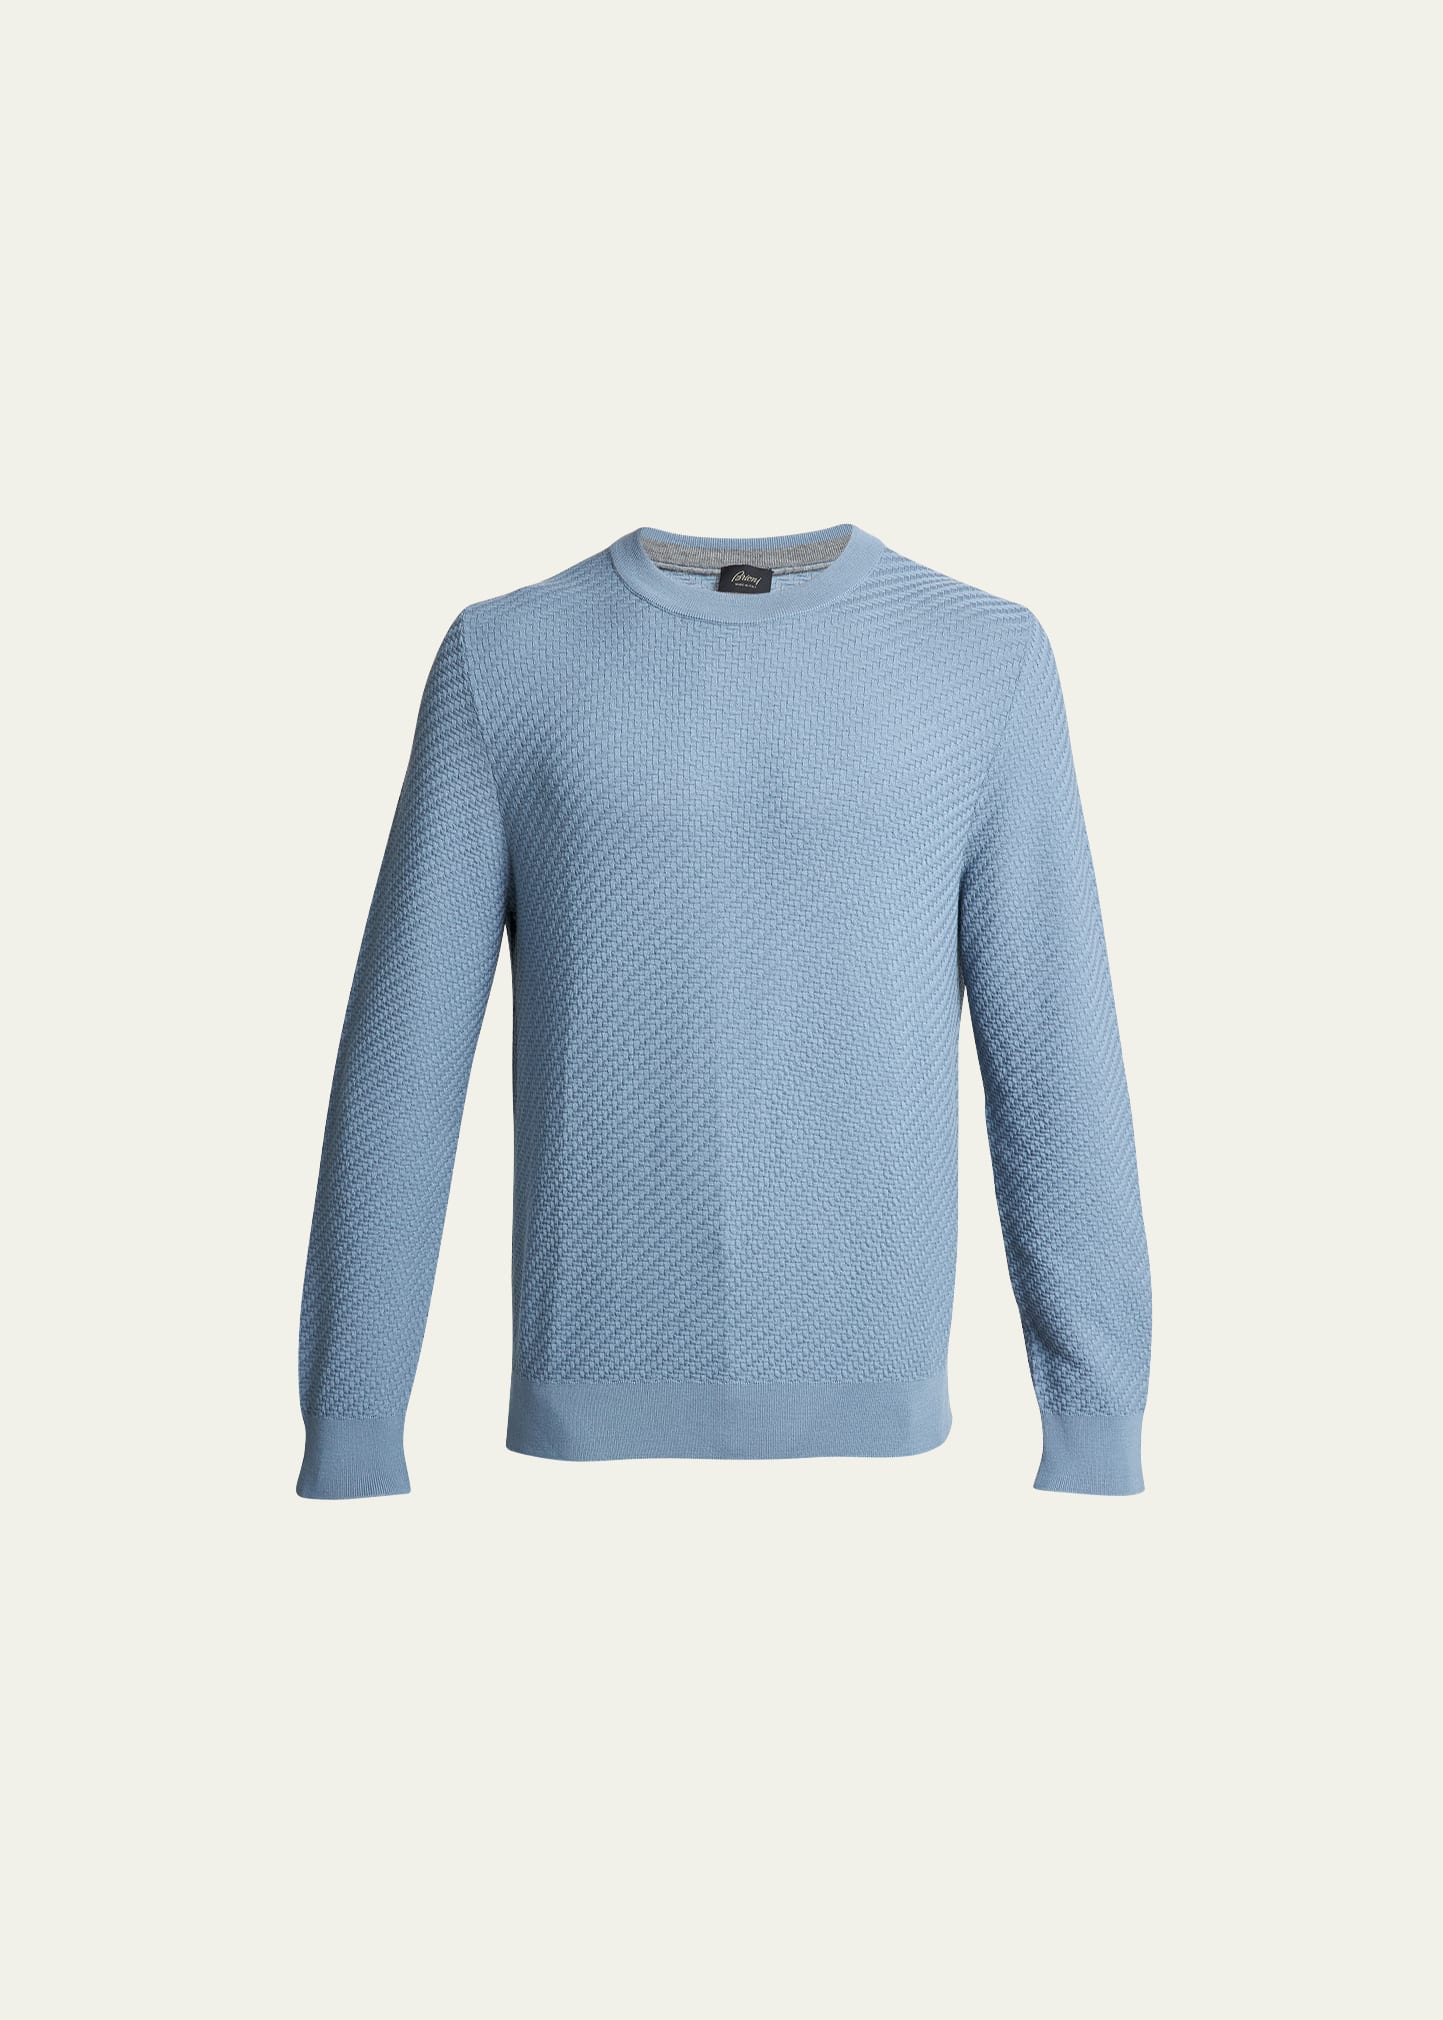 Brioni Men's Bordeaux Wool-Cashmere Sweater